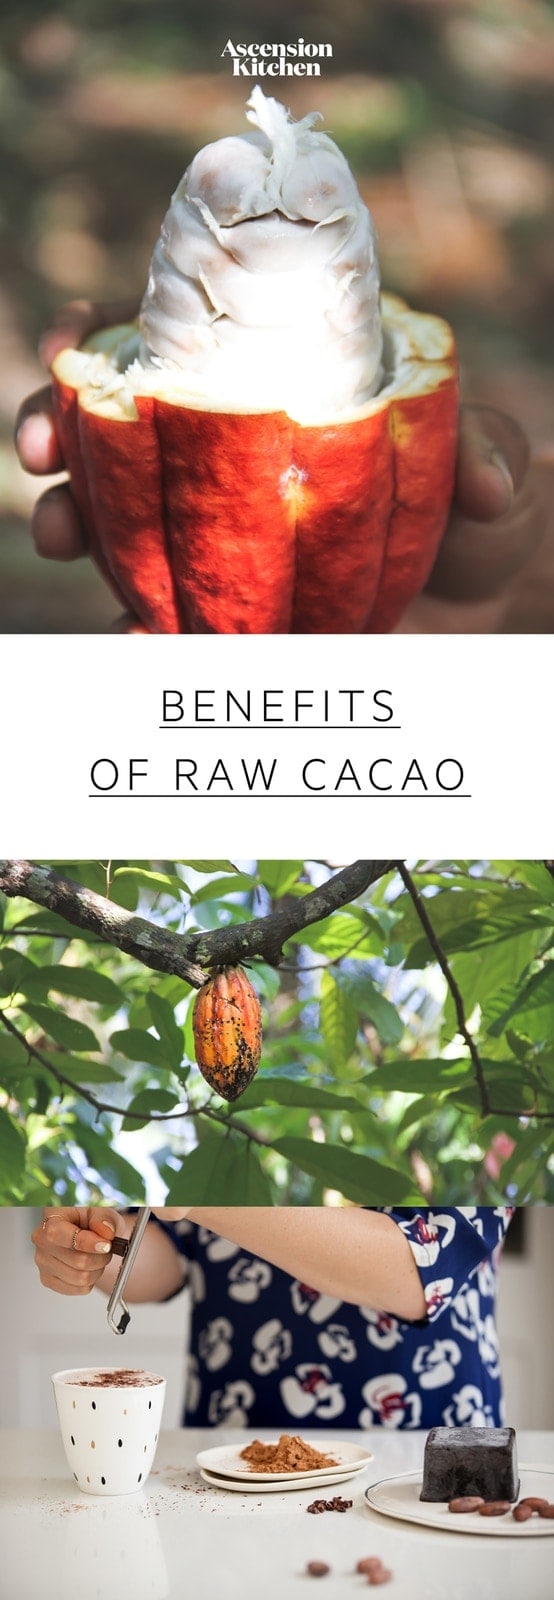 odżywianie korzyści zdrowotne kakao: dowiedz się, jak surowe kakao różni się od kakao, dlaczego kakao jest tak korzystne. # użytecznośćsakao # kakaobróbki #kakaobróbki #kakaobróbki # surowa kakaoproszek #kakaoproszkrecepty #pożywienie #rosnącakuchnia